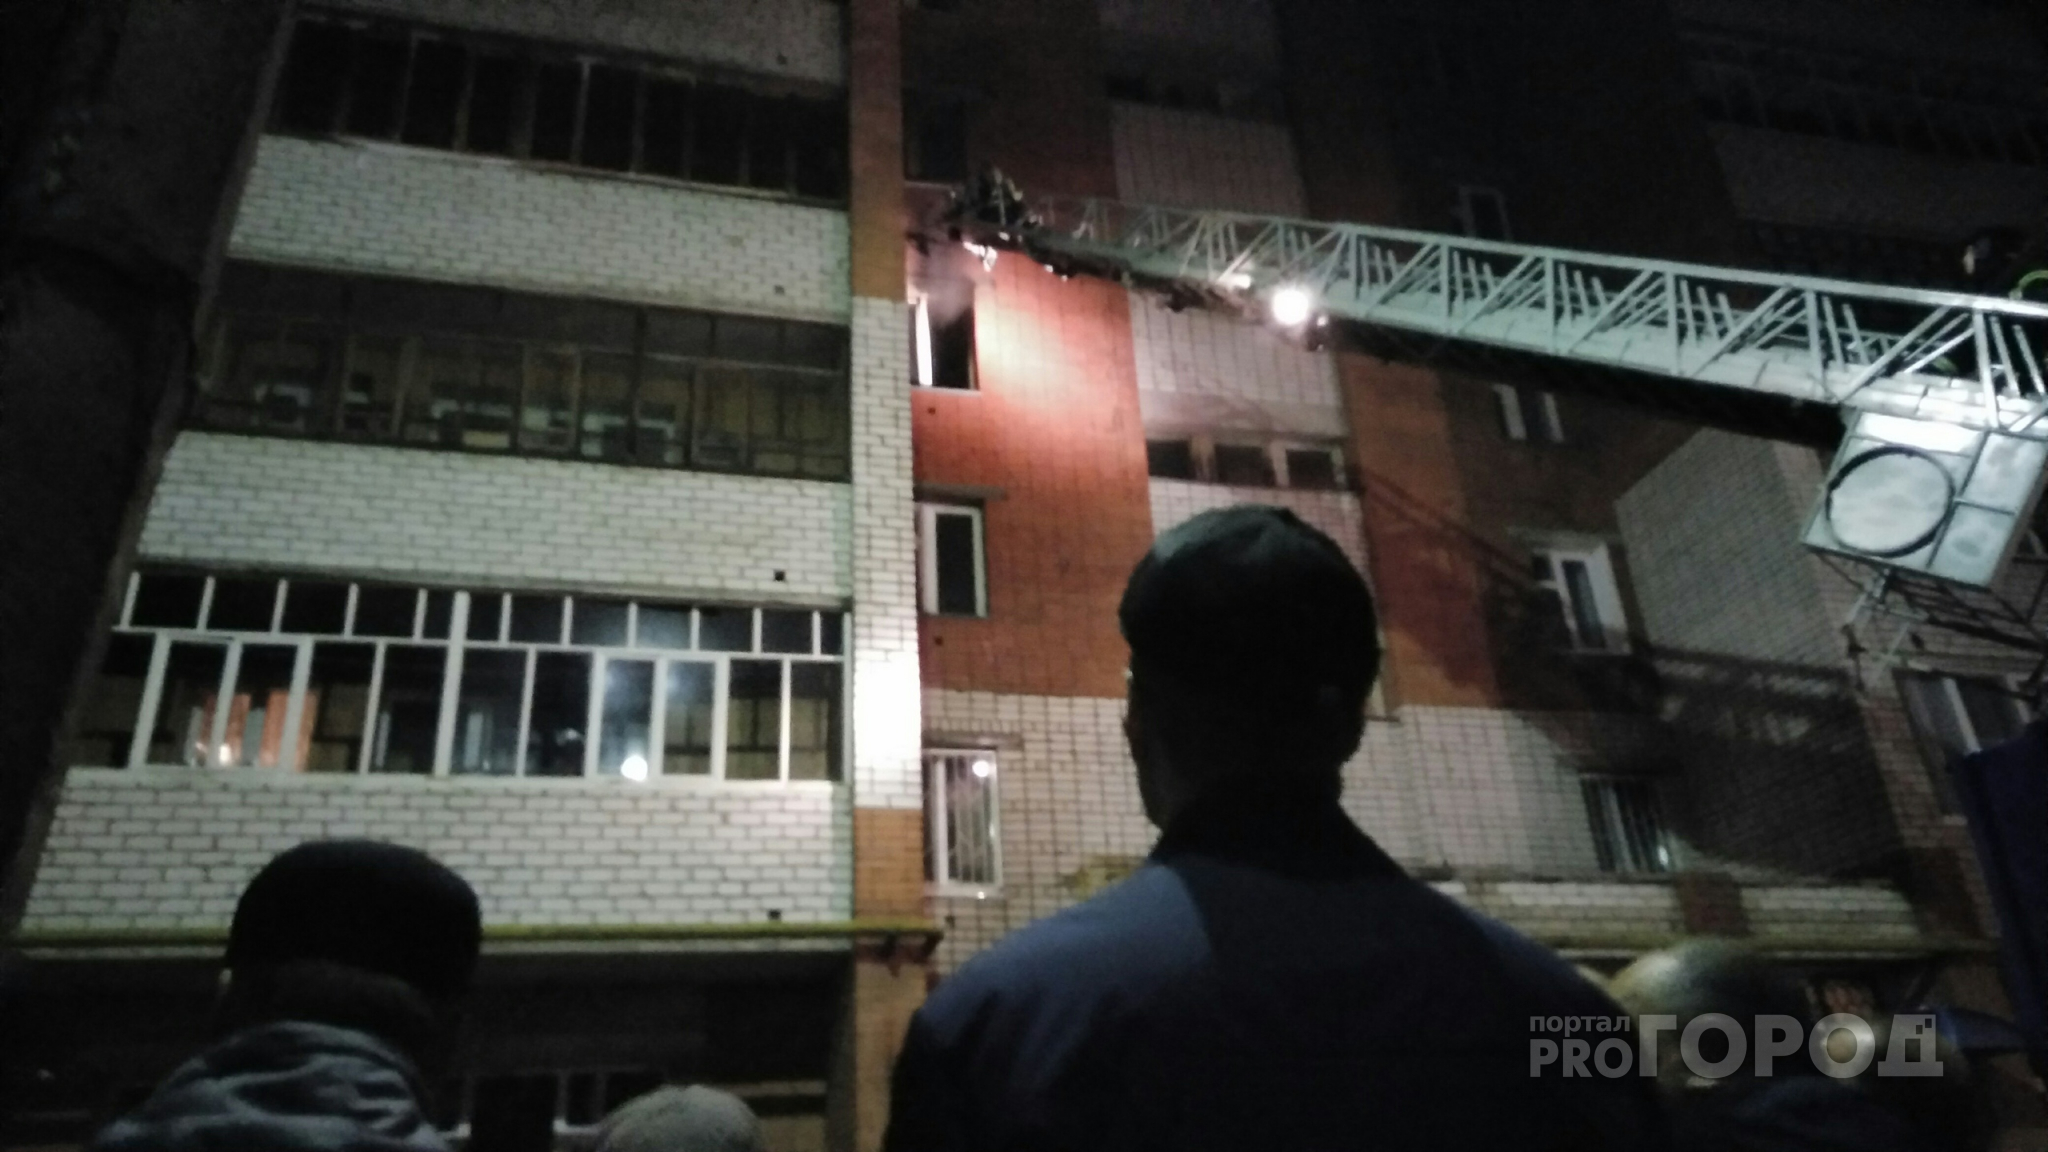 Названа причина возгорания квартиры по проспекту Мира в Чебоксарах